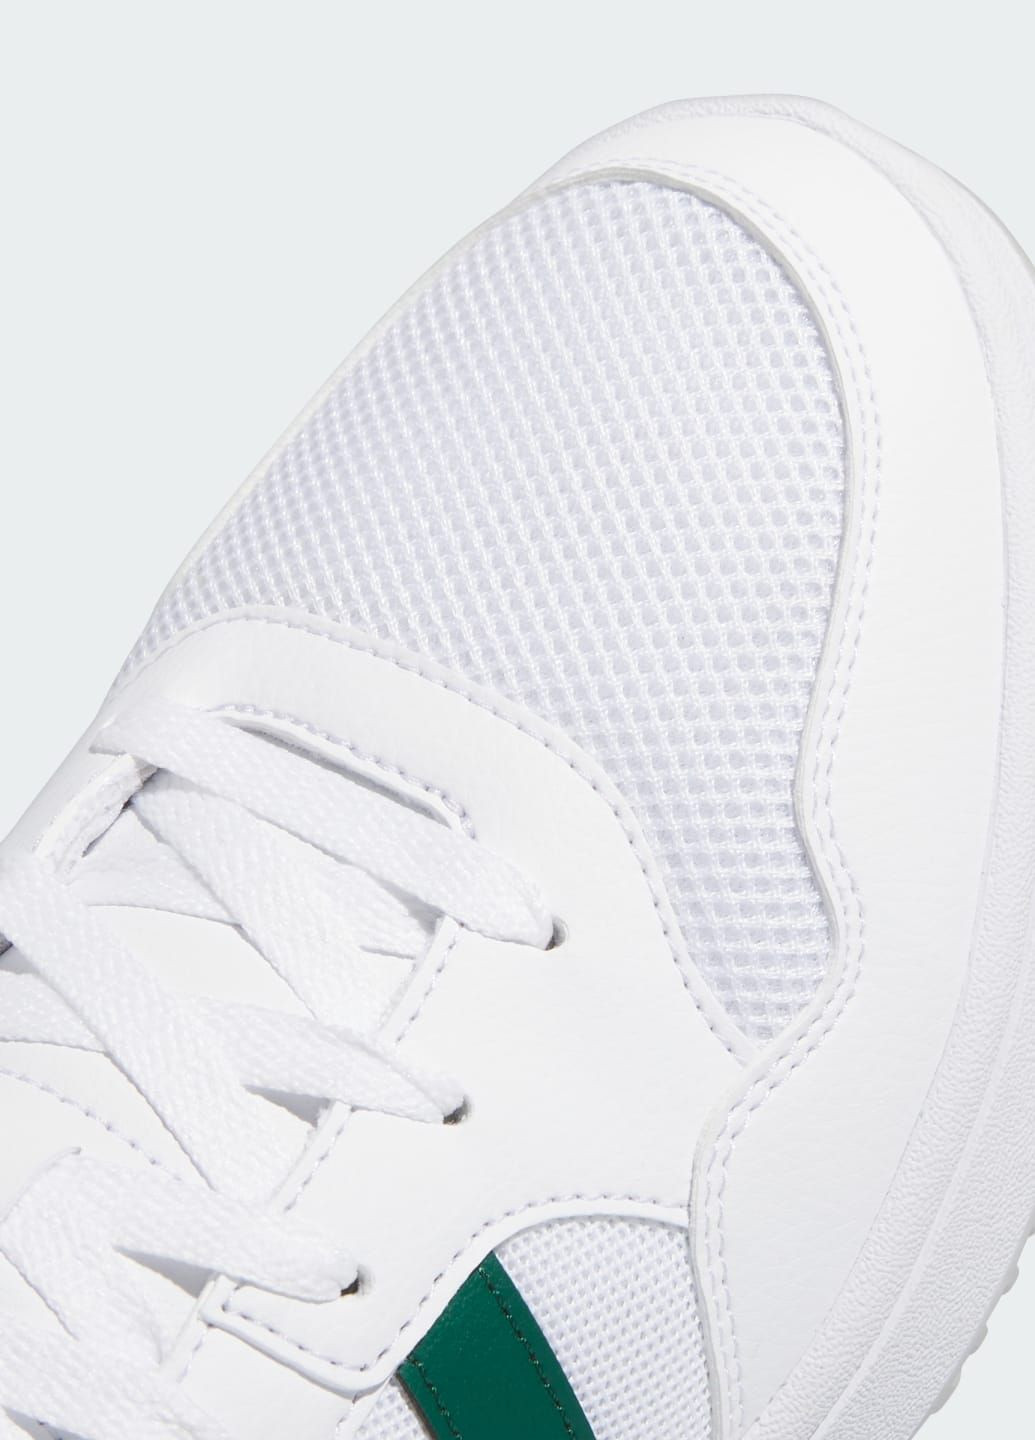 Белые всесезонные кроссовки hoops 3.0 summer adidas